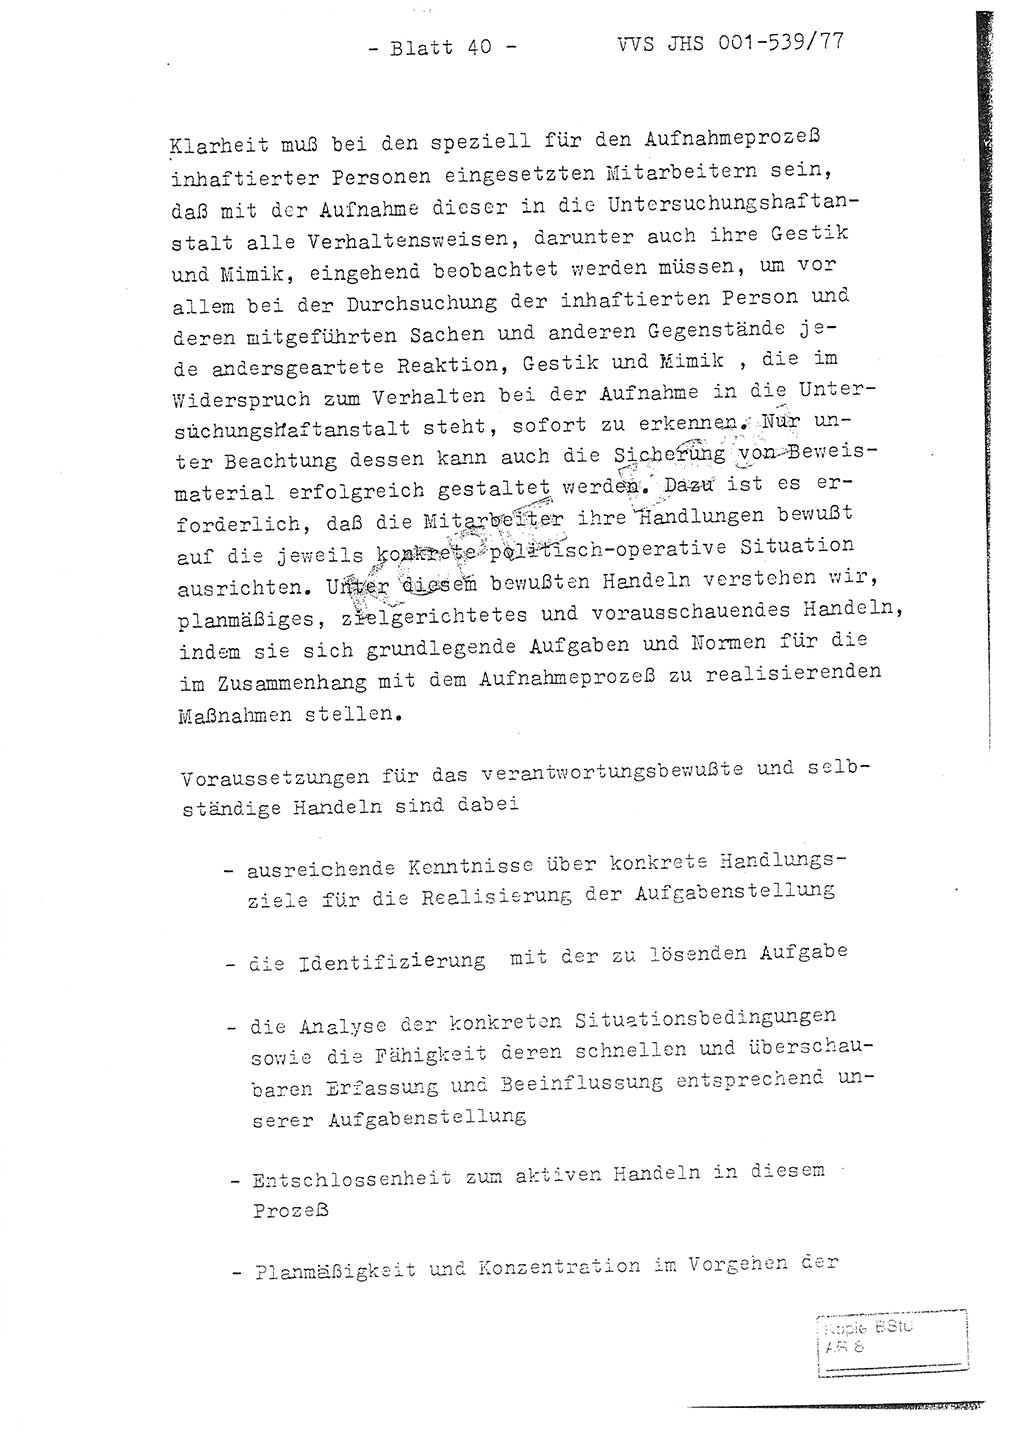 Fachschulabschlußarbeit Hauptmann Dietrich Jung (Abt. ⅩⅣ), Leutnant Klaus Klötzner (Abt. ⅩⅣ), Ministerium für Staatssicherheit (MfS) [Deutsche Demokratische Republik (DDR)], Juristische Hochschule (JHS), Vertrauliche Verschlußsache (VVS) 001-539/77, Potsdam 1978, Seite 40 (FS-Abschl.-Arb. MfS DDR JHS VVS 001-539/77 1978, S. 40)